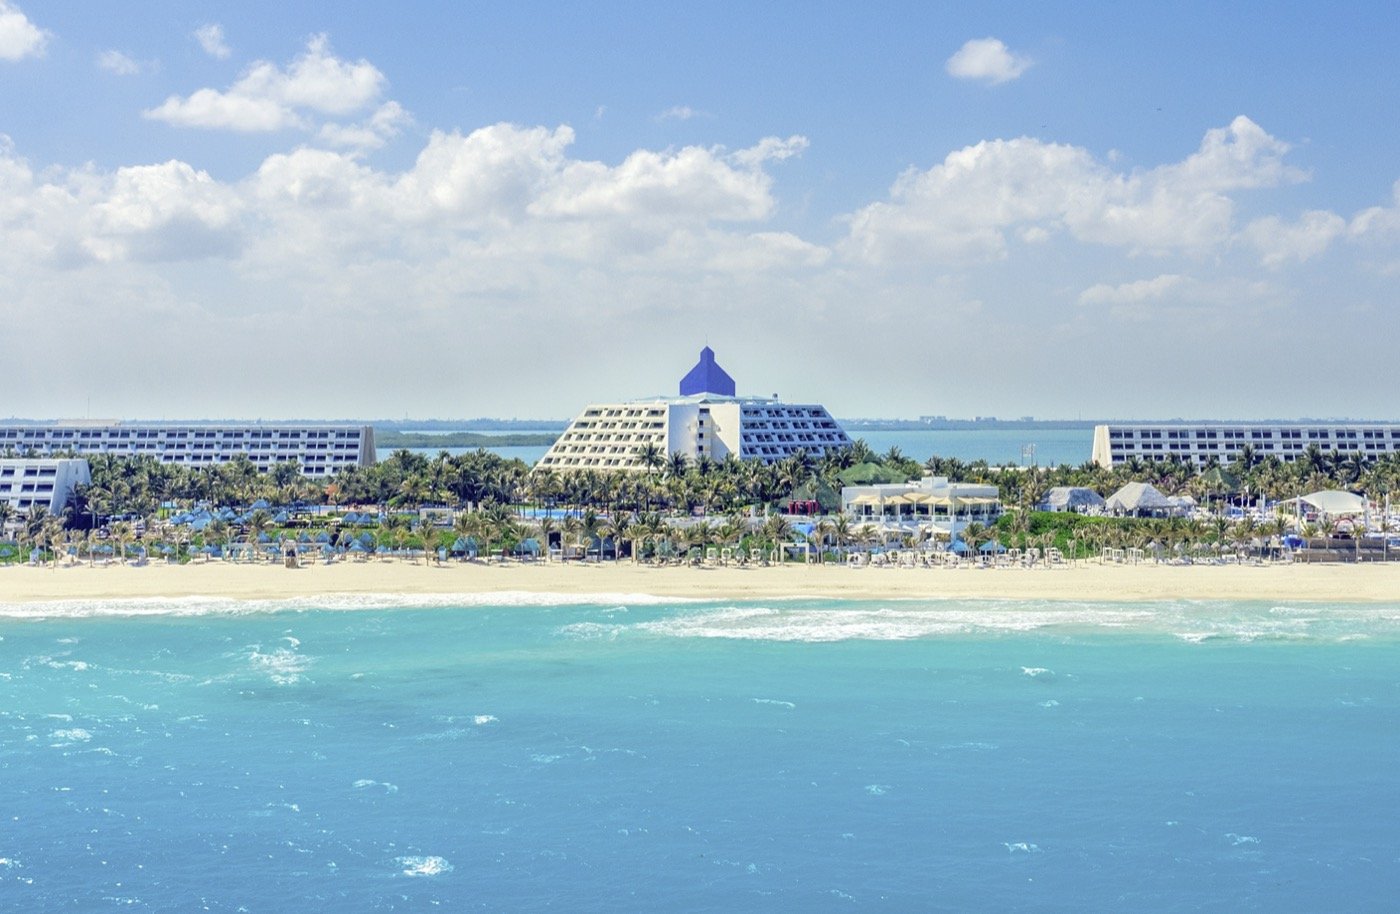 All inclusive hotels in Cancun